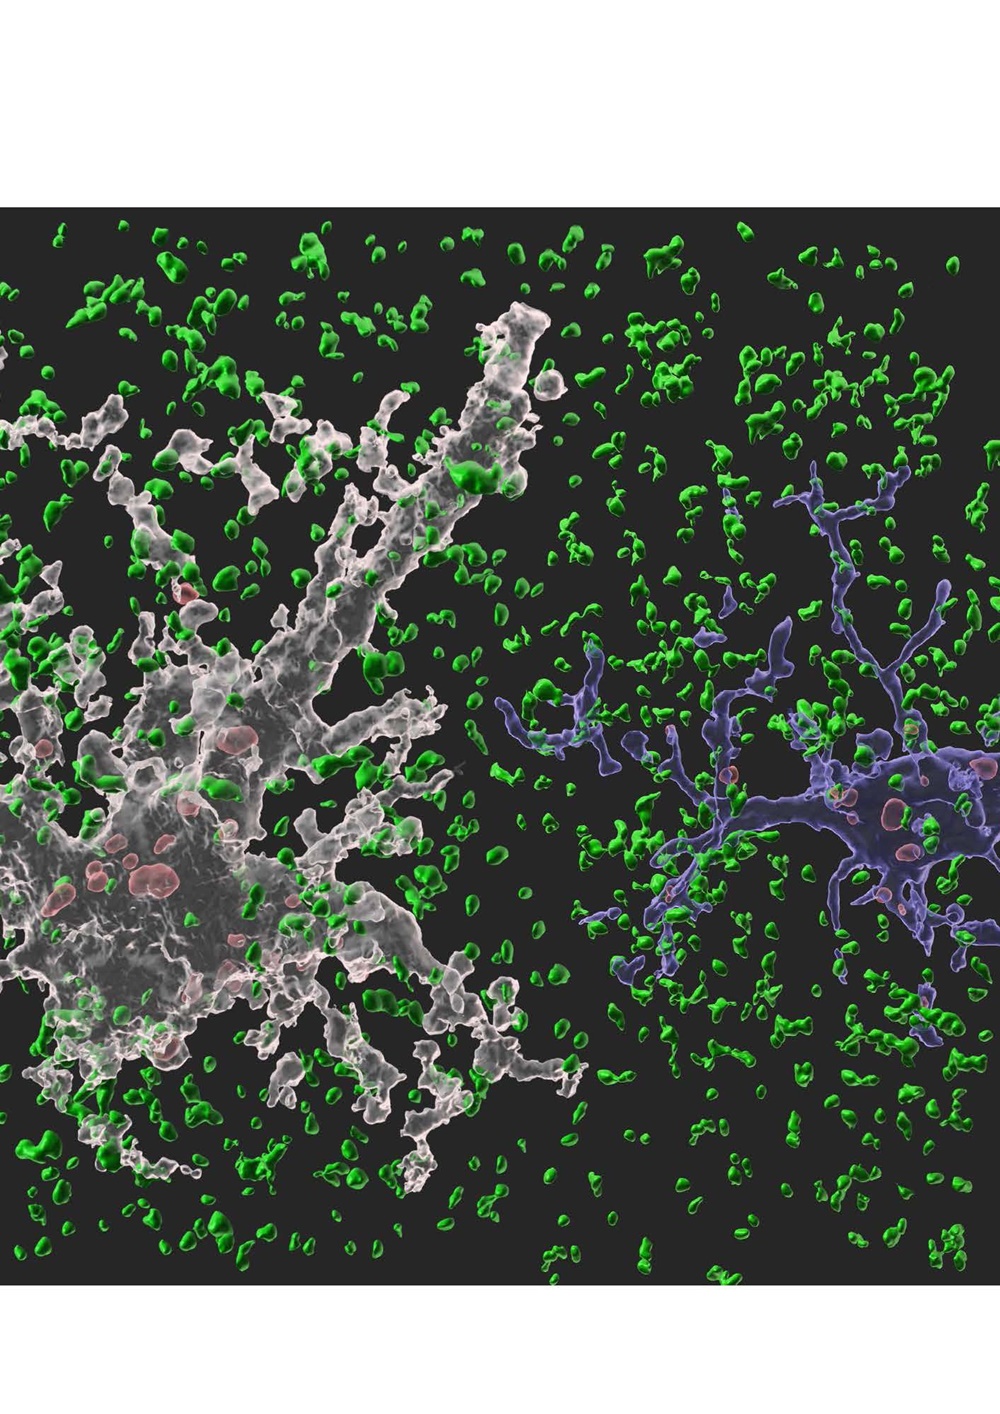 뇌에서 뉴런을 도와 뇌 항상성 유지 역할을 수행하는 세포인 별아교세포(하얀색)와 미세아교세포(파란색)가 시냅스를 제거하고 있는 모습